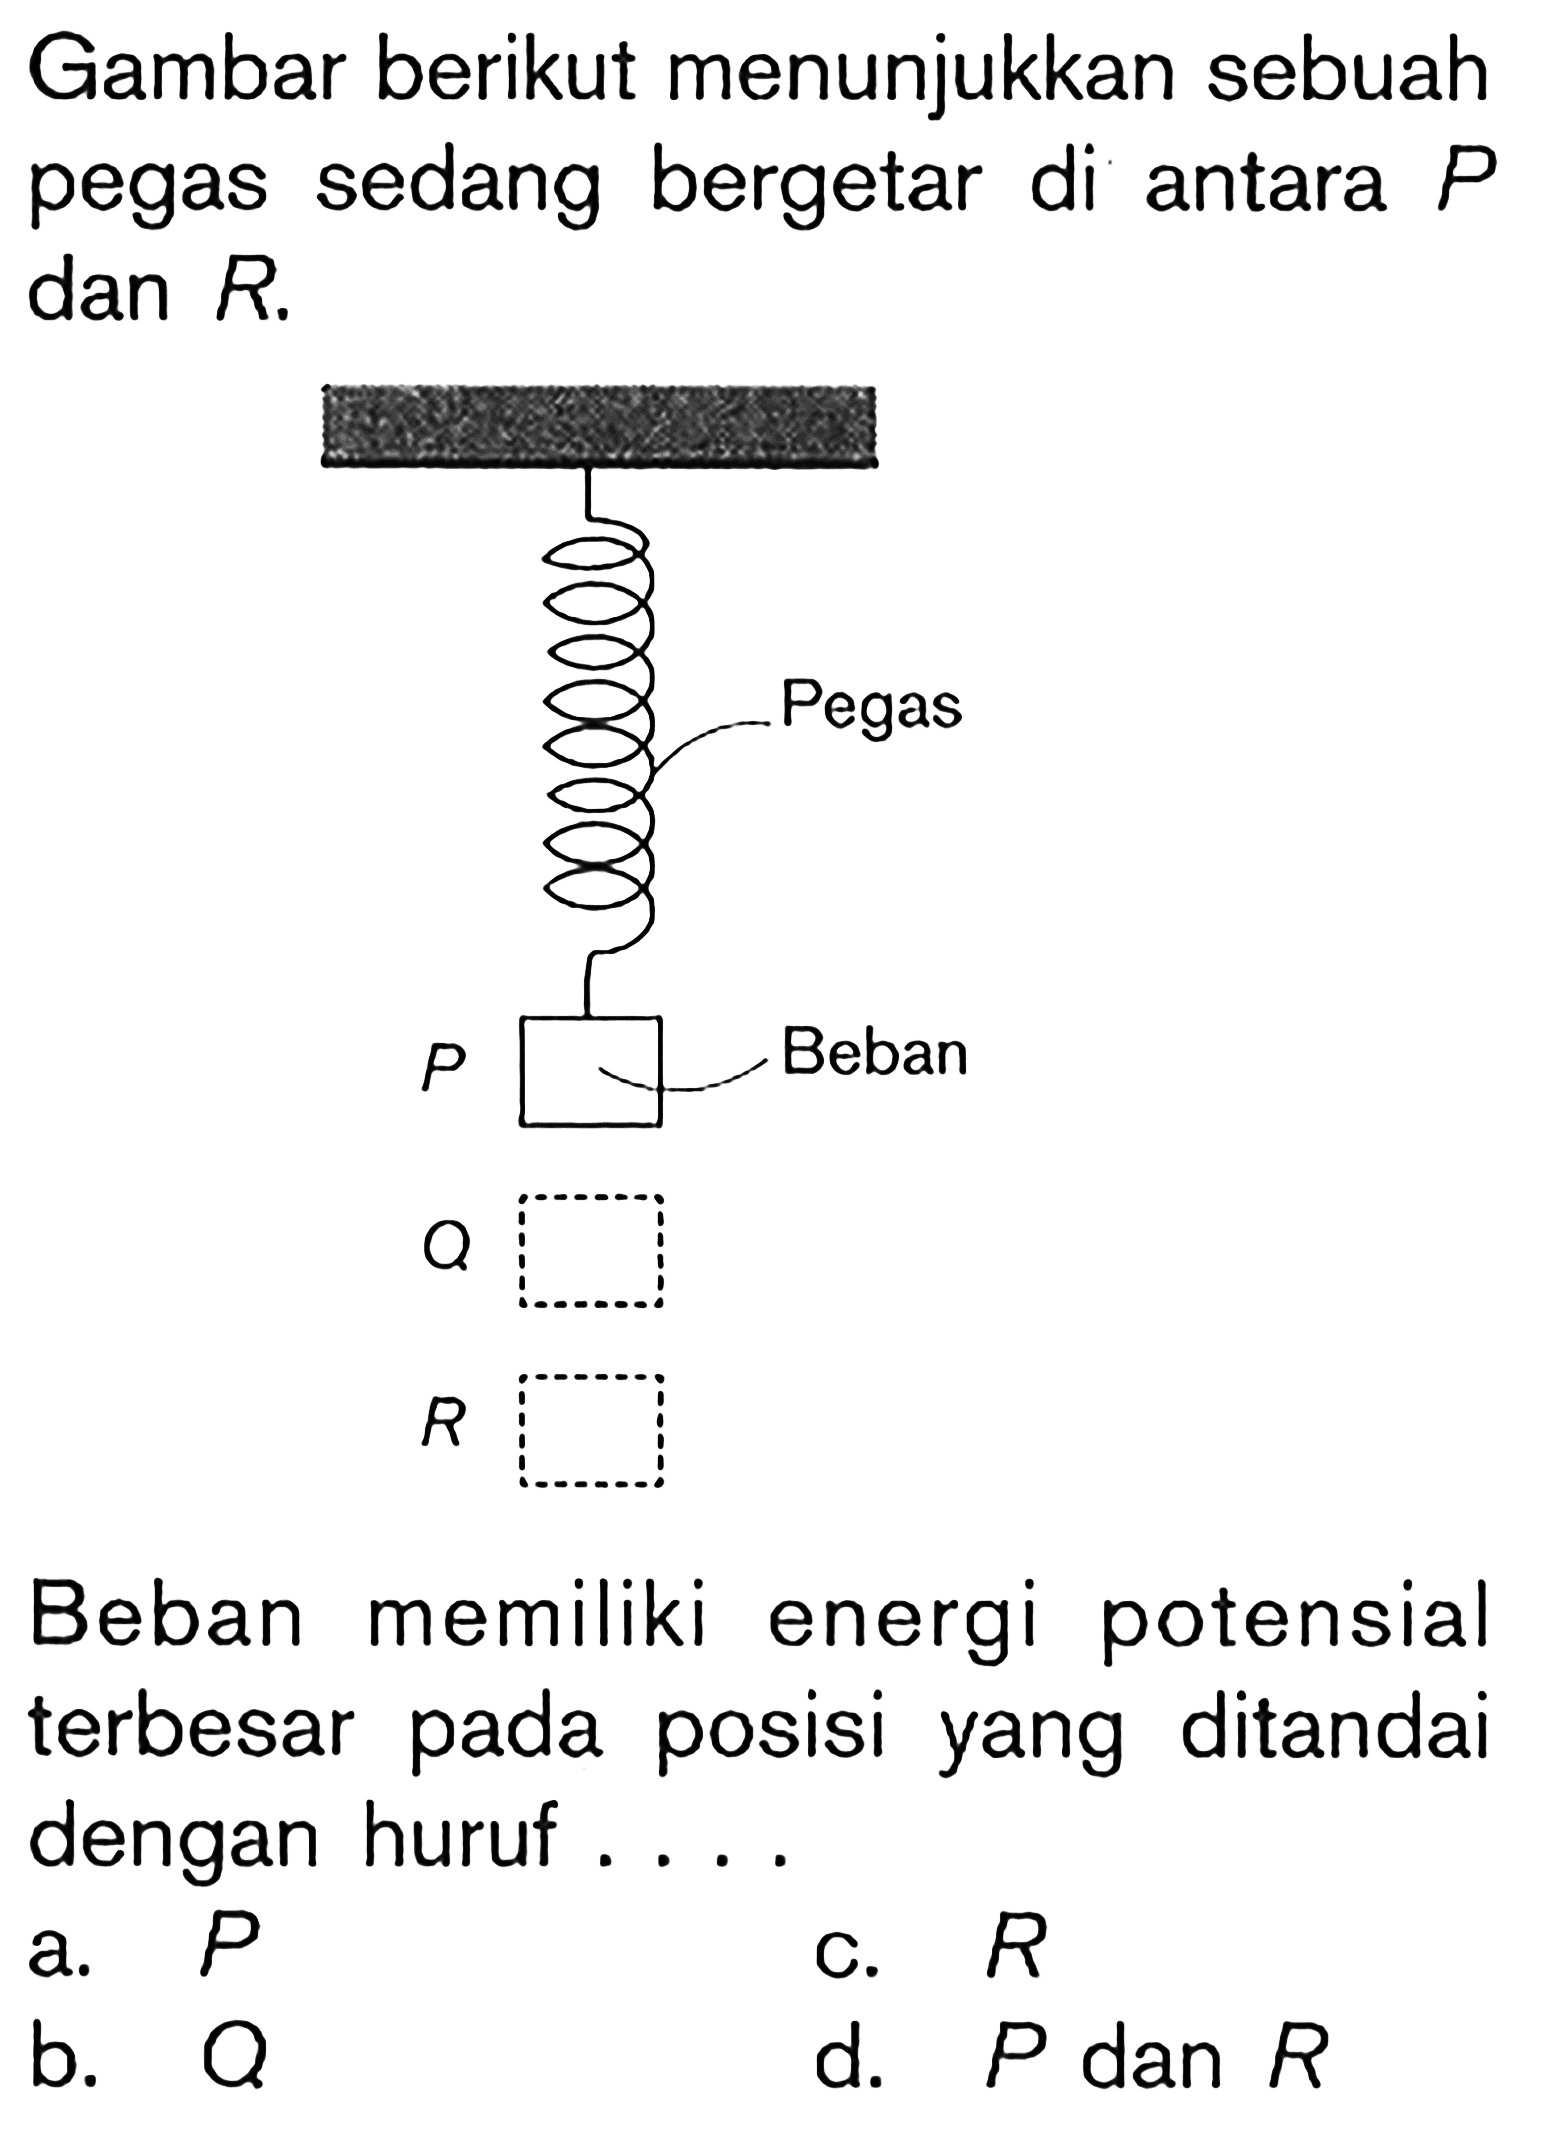 Gambar berikut menunjukkan sebuah pegas sedang bergetar di antara P dan R.
 Pegas Bebasn P Q R 
Beban memiliki energi potensial terbesar pada posisi yang ditandai dengan huruf....
